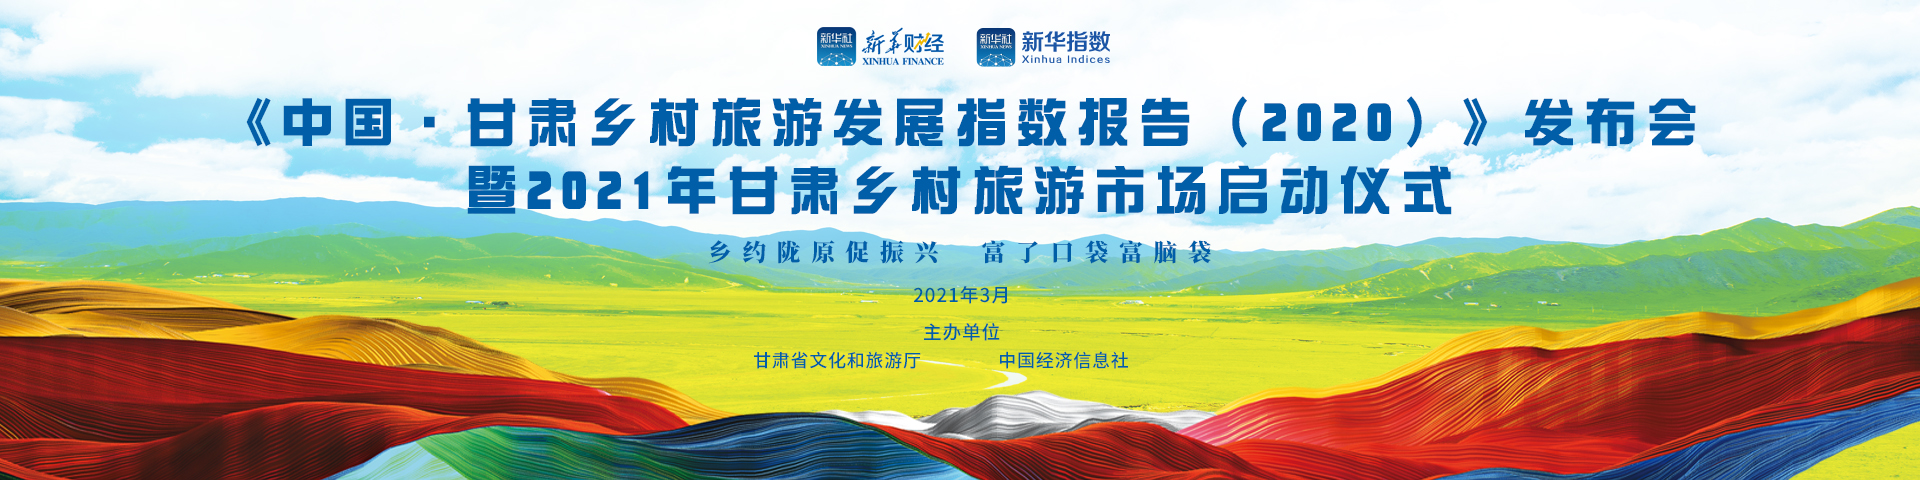 中国甘肃乡村旅游发展指数报告